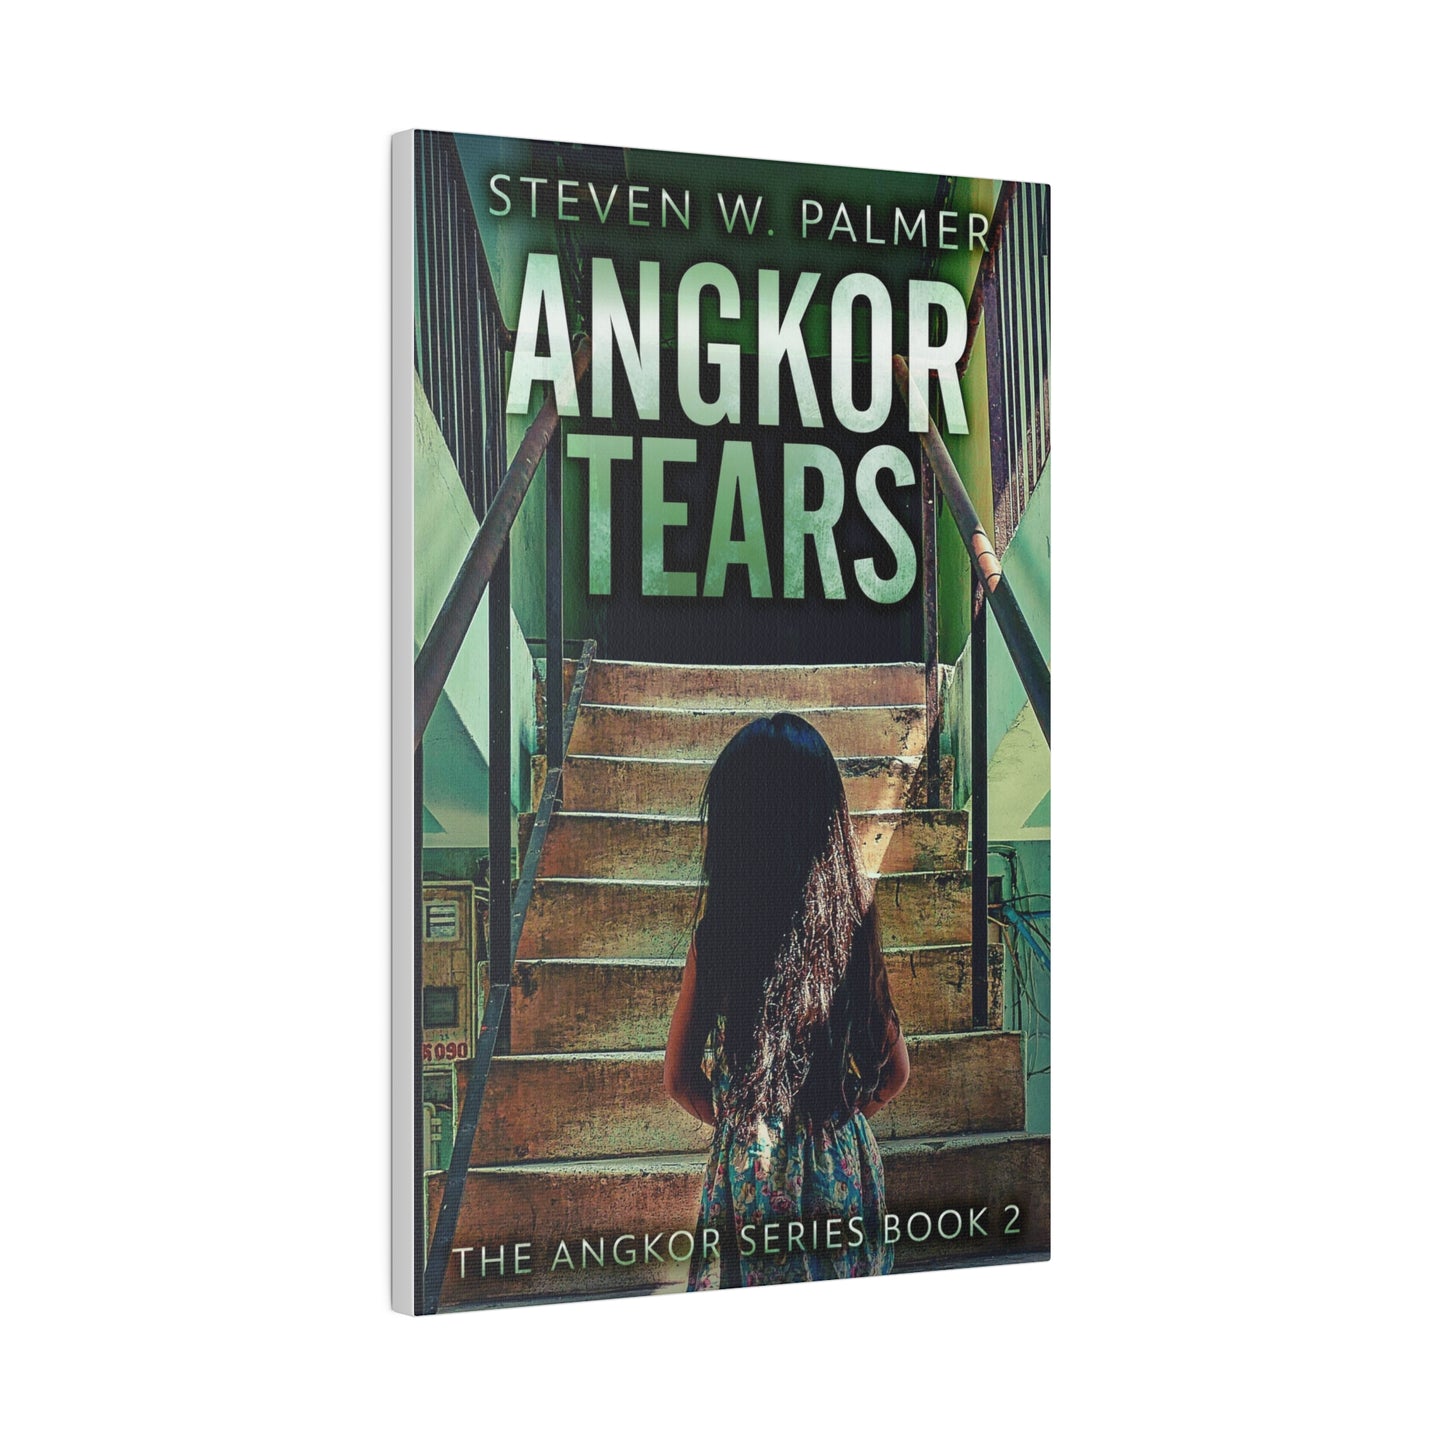 Angkor Tears - Canvas